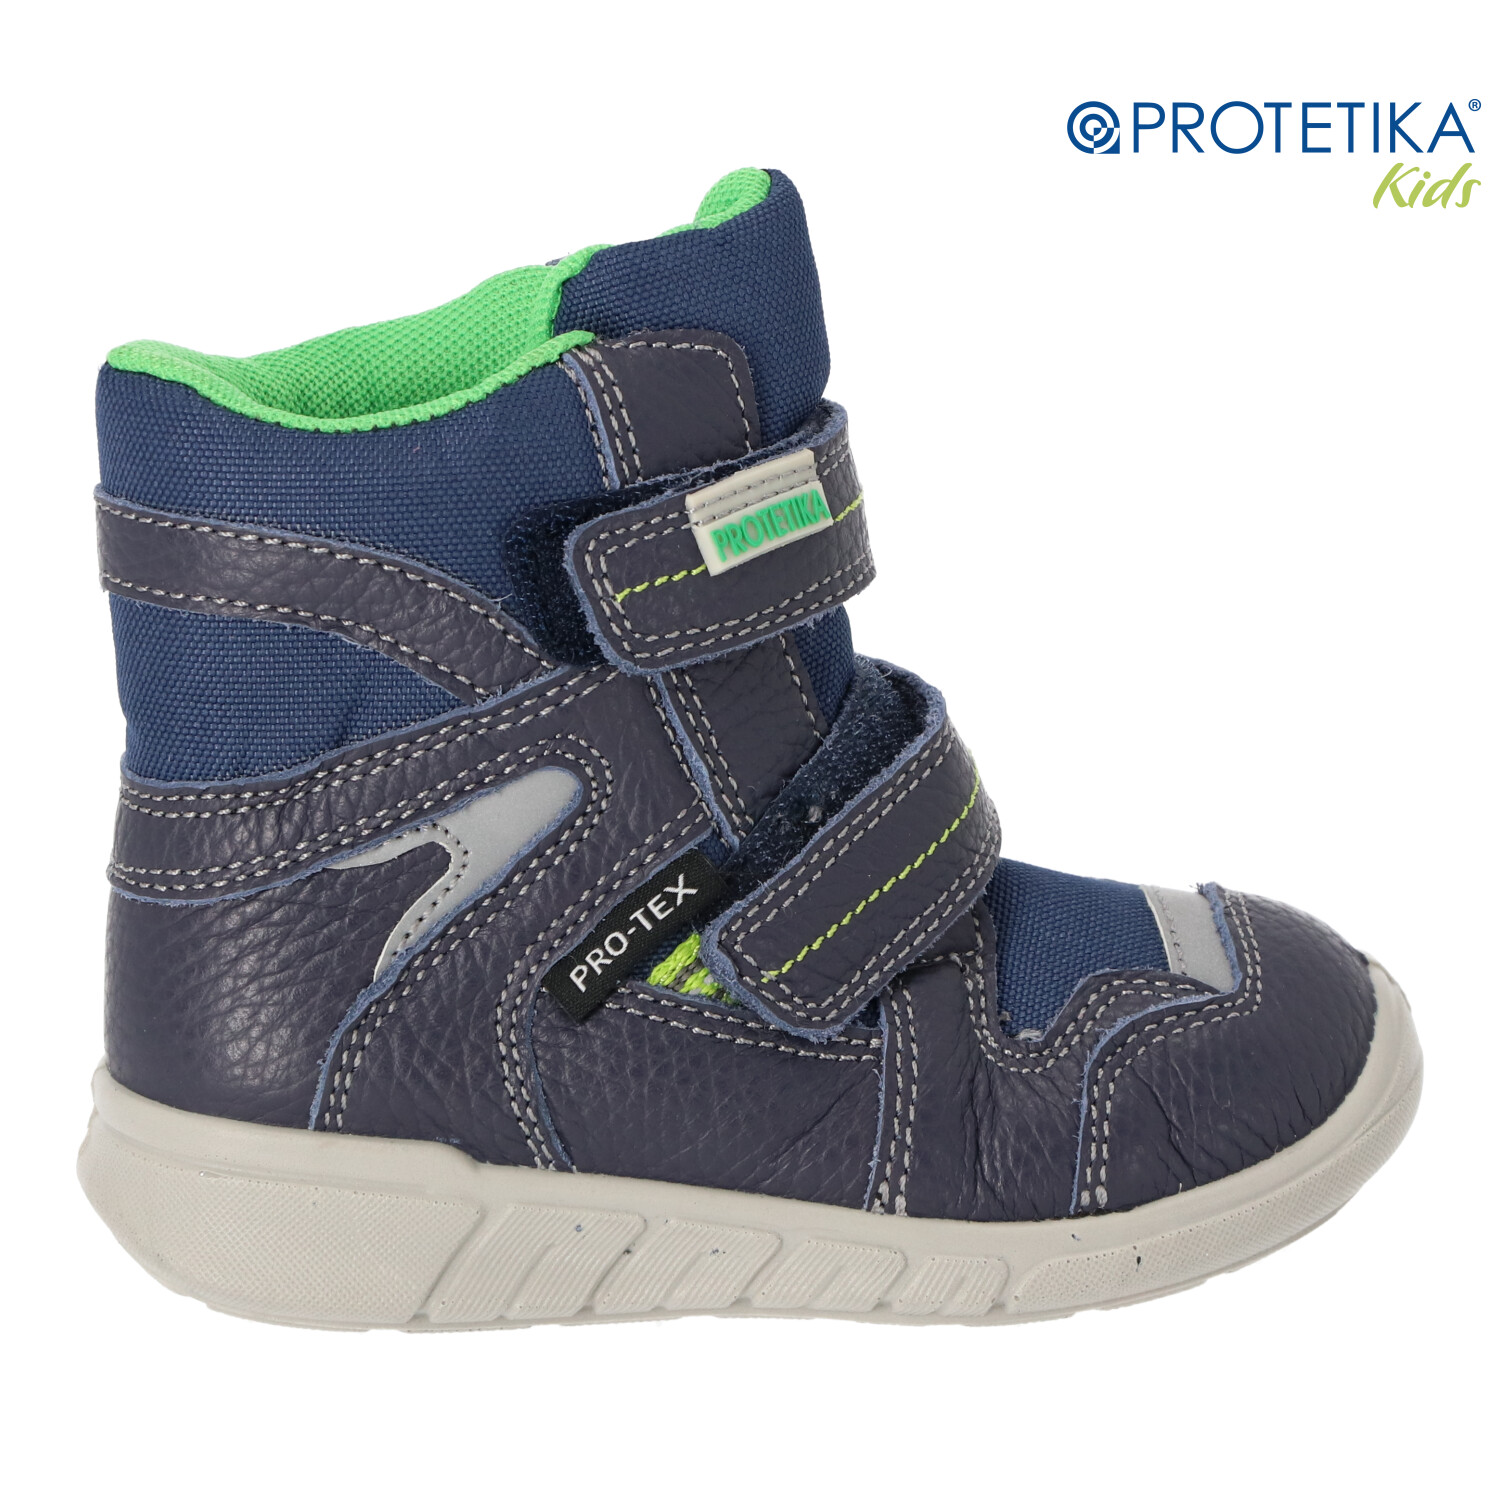 Protetika - zimné topánky s membránou PRO-tex SANTO - zateplené